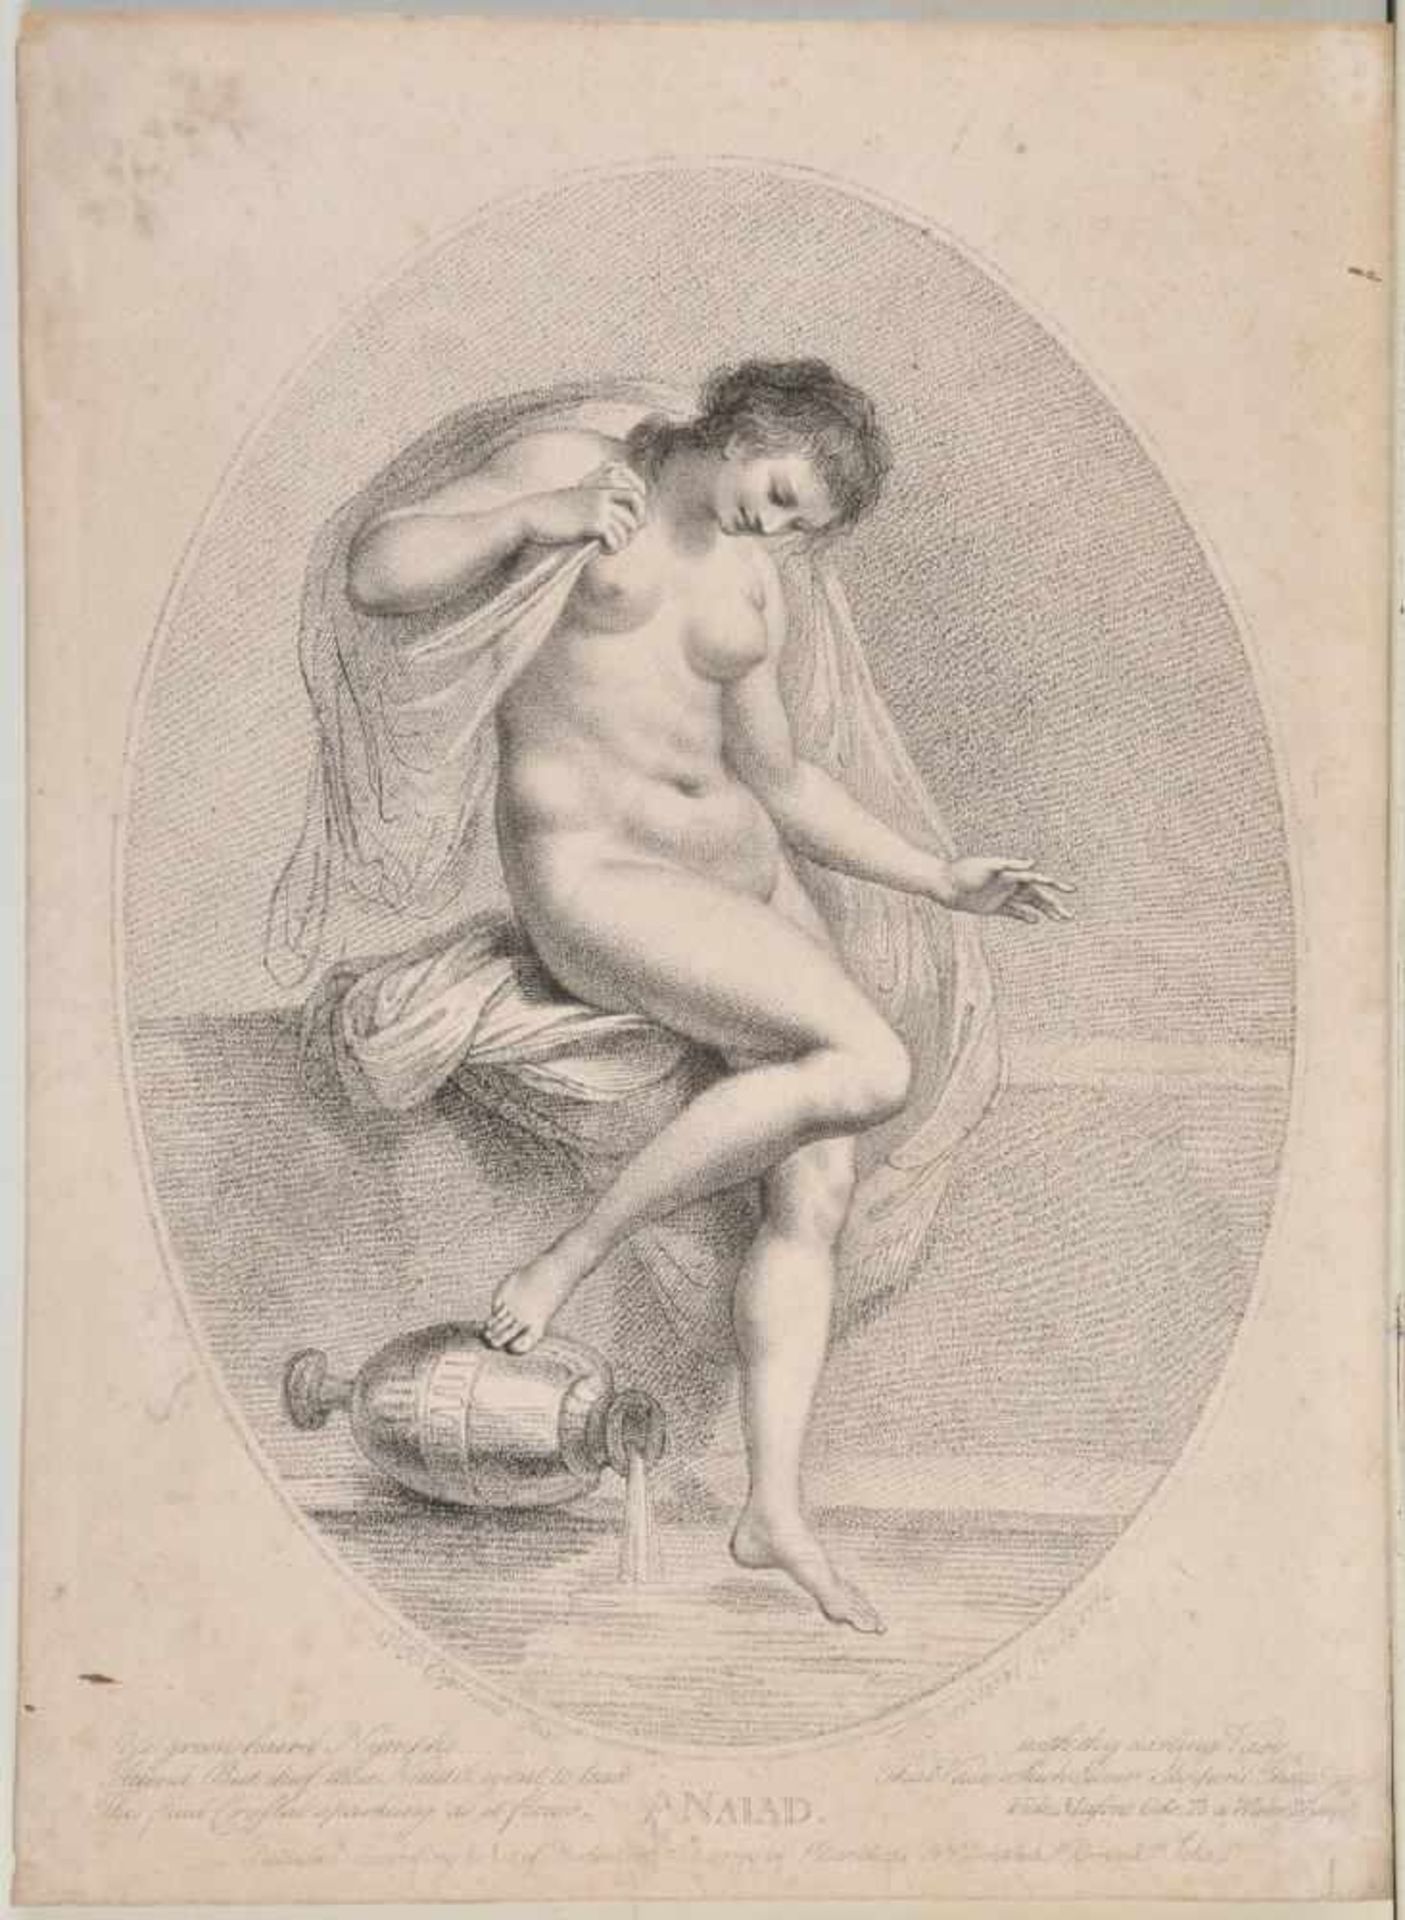 Bartolozzi, Francesco, 1727 Florenz - 1815 LissabonLithographie, oval, 30 x 22,5 cm, " Najade ", i.